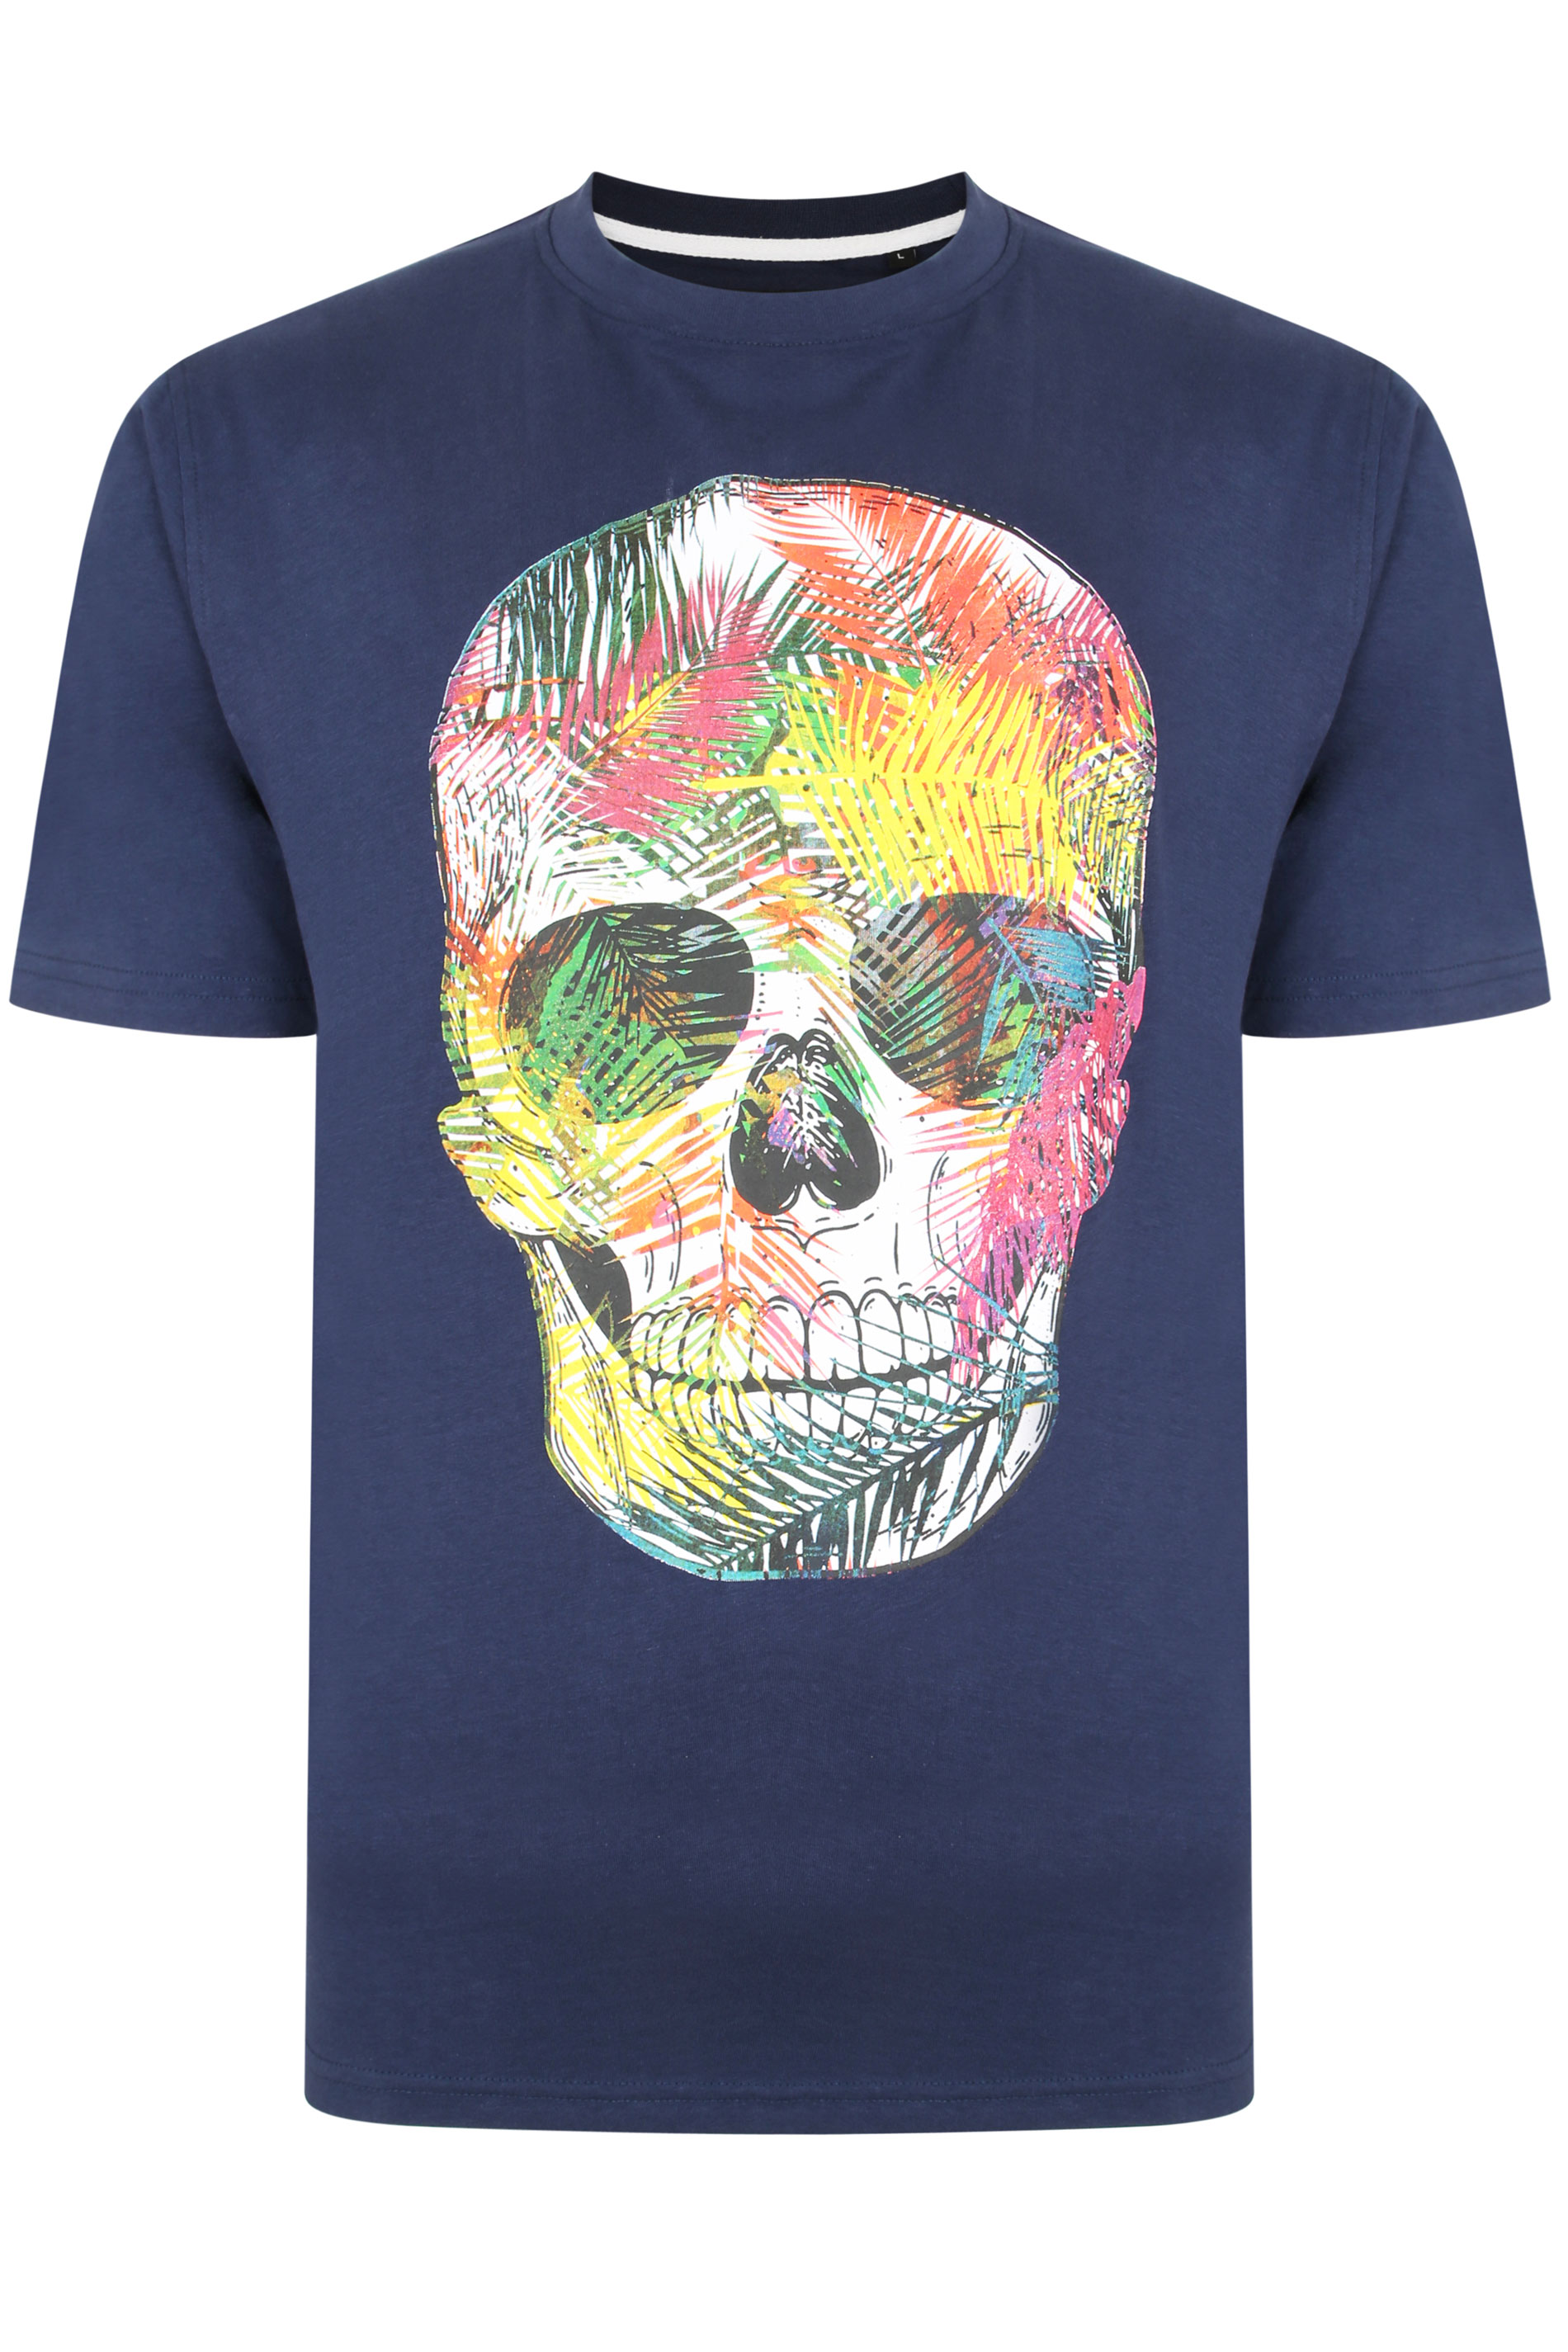 KAM Big & Tall Navy Blue Skull Print T-Shirt_F.jpg